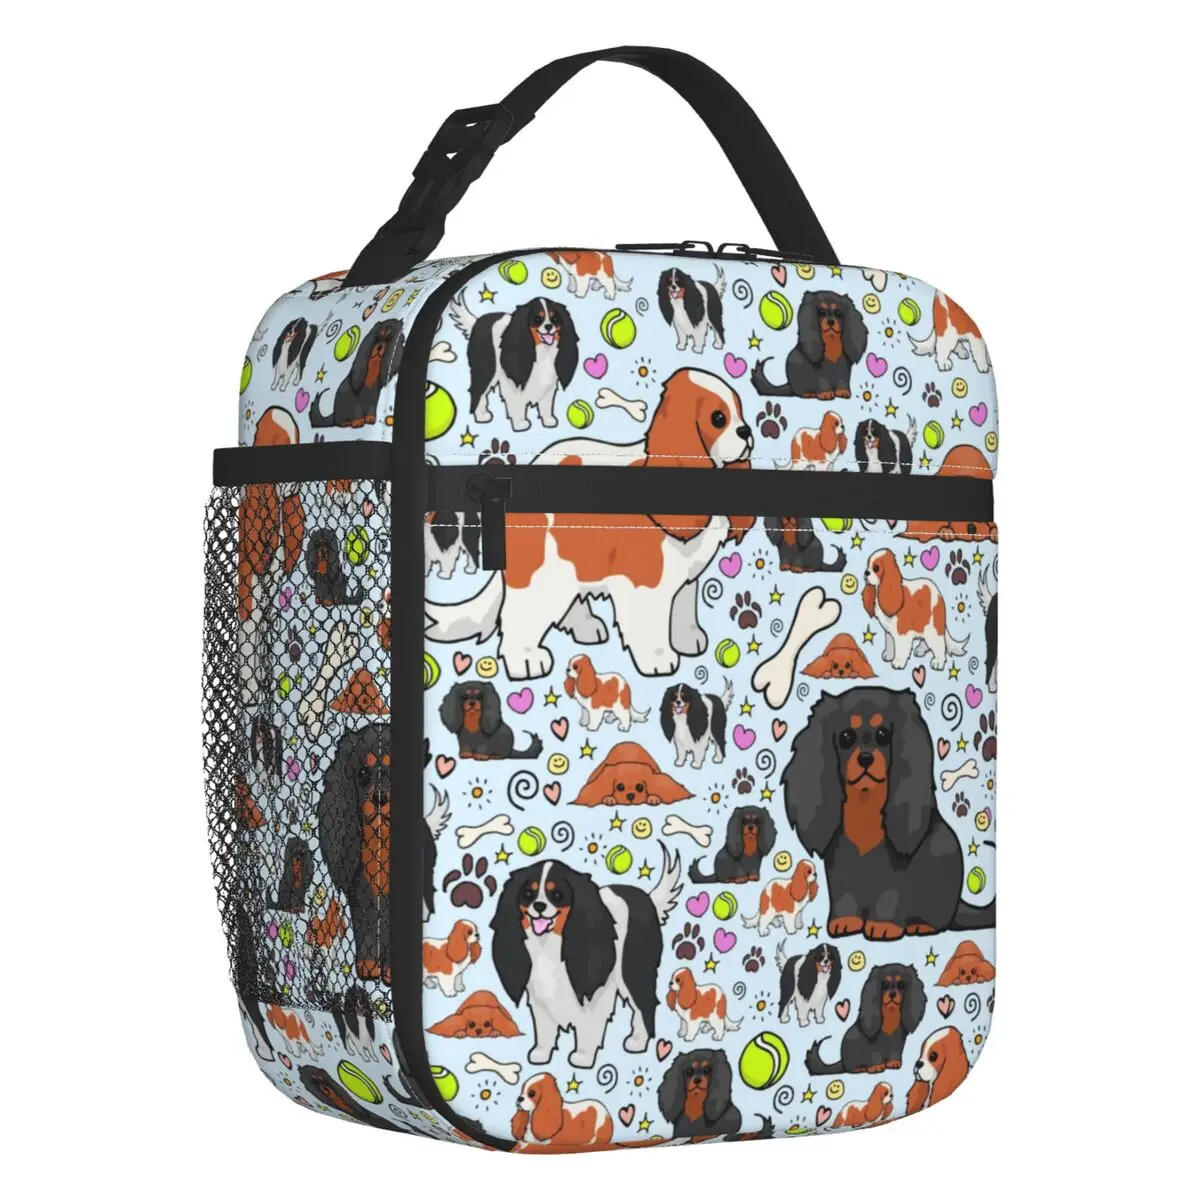 Кавалер Кинг Чарльз Спаниель Термоизолированная сумка для ланча Для любителей собак, Многоразовый контейнер для ланча для школы, Многофункциональная коробка для еды